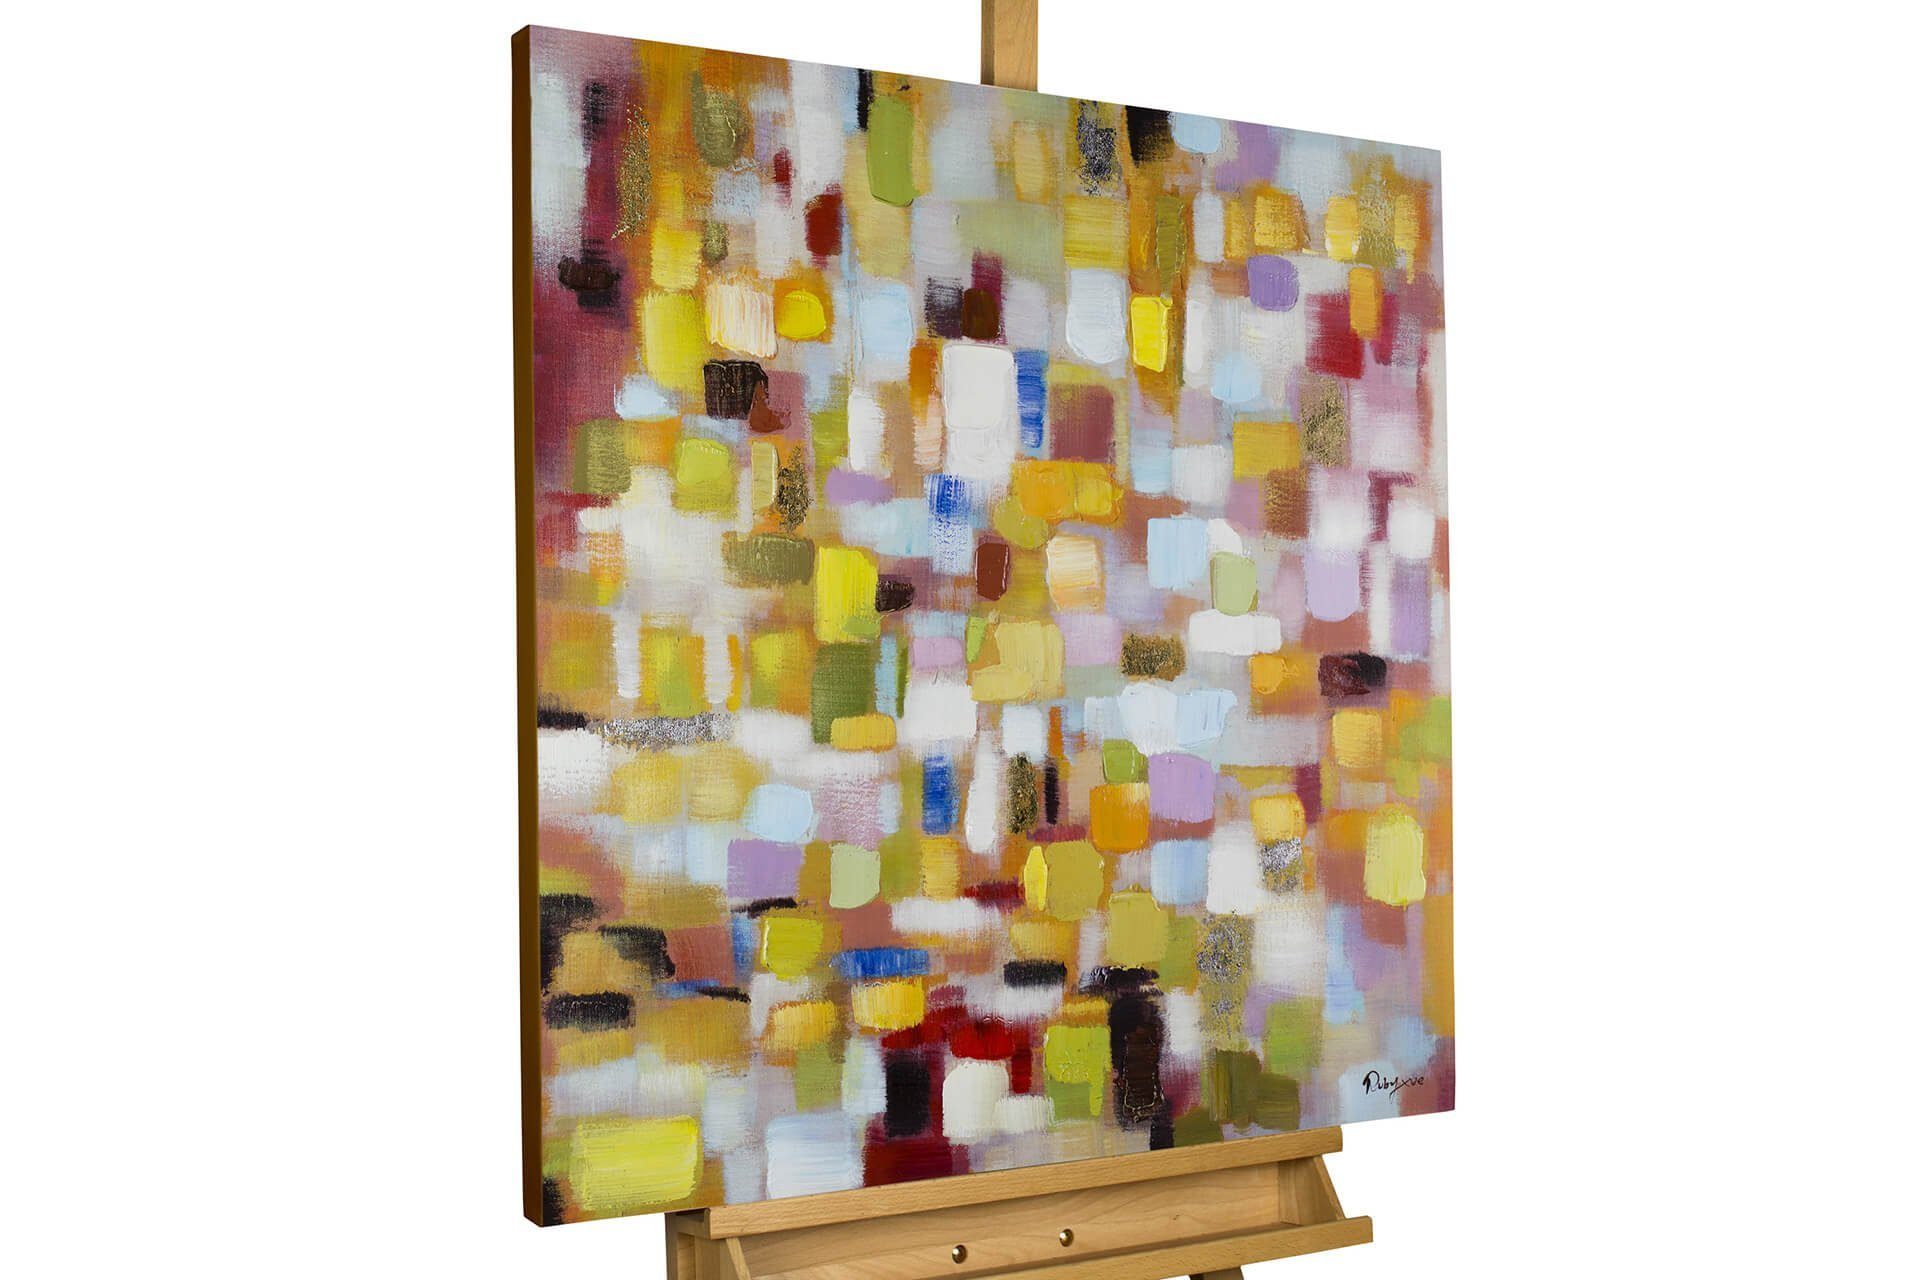 KUNSTLOFT Gemälde Flickenteppich in Pastell 80x80 cm, Leinwandbild 100% HANDGEMALT Wandbild Wohnzimmer